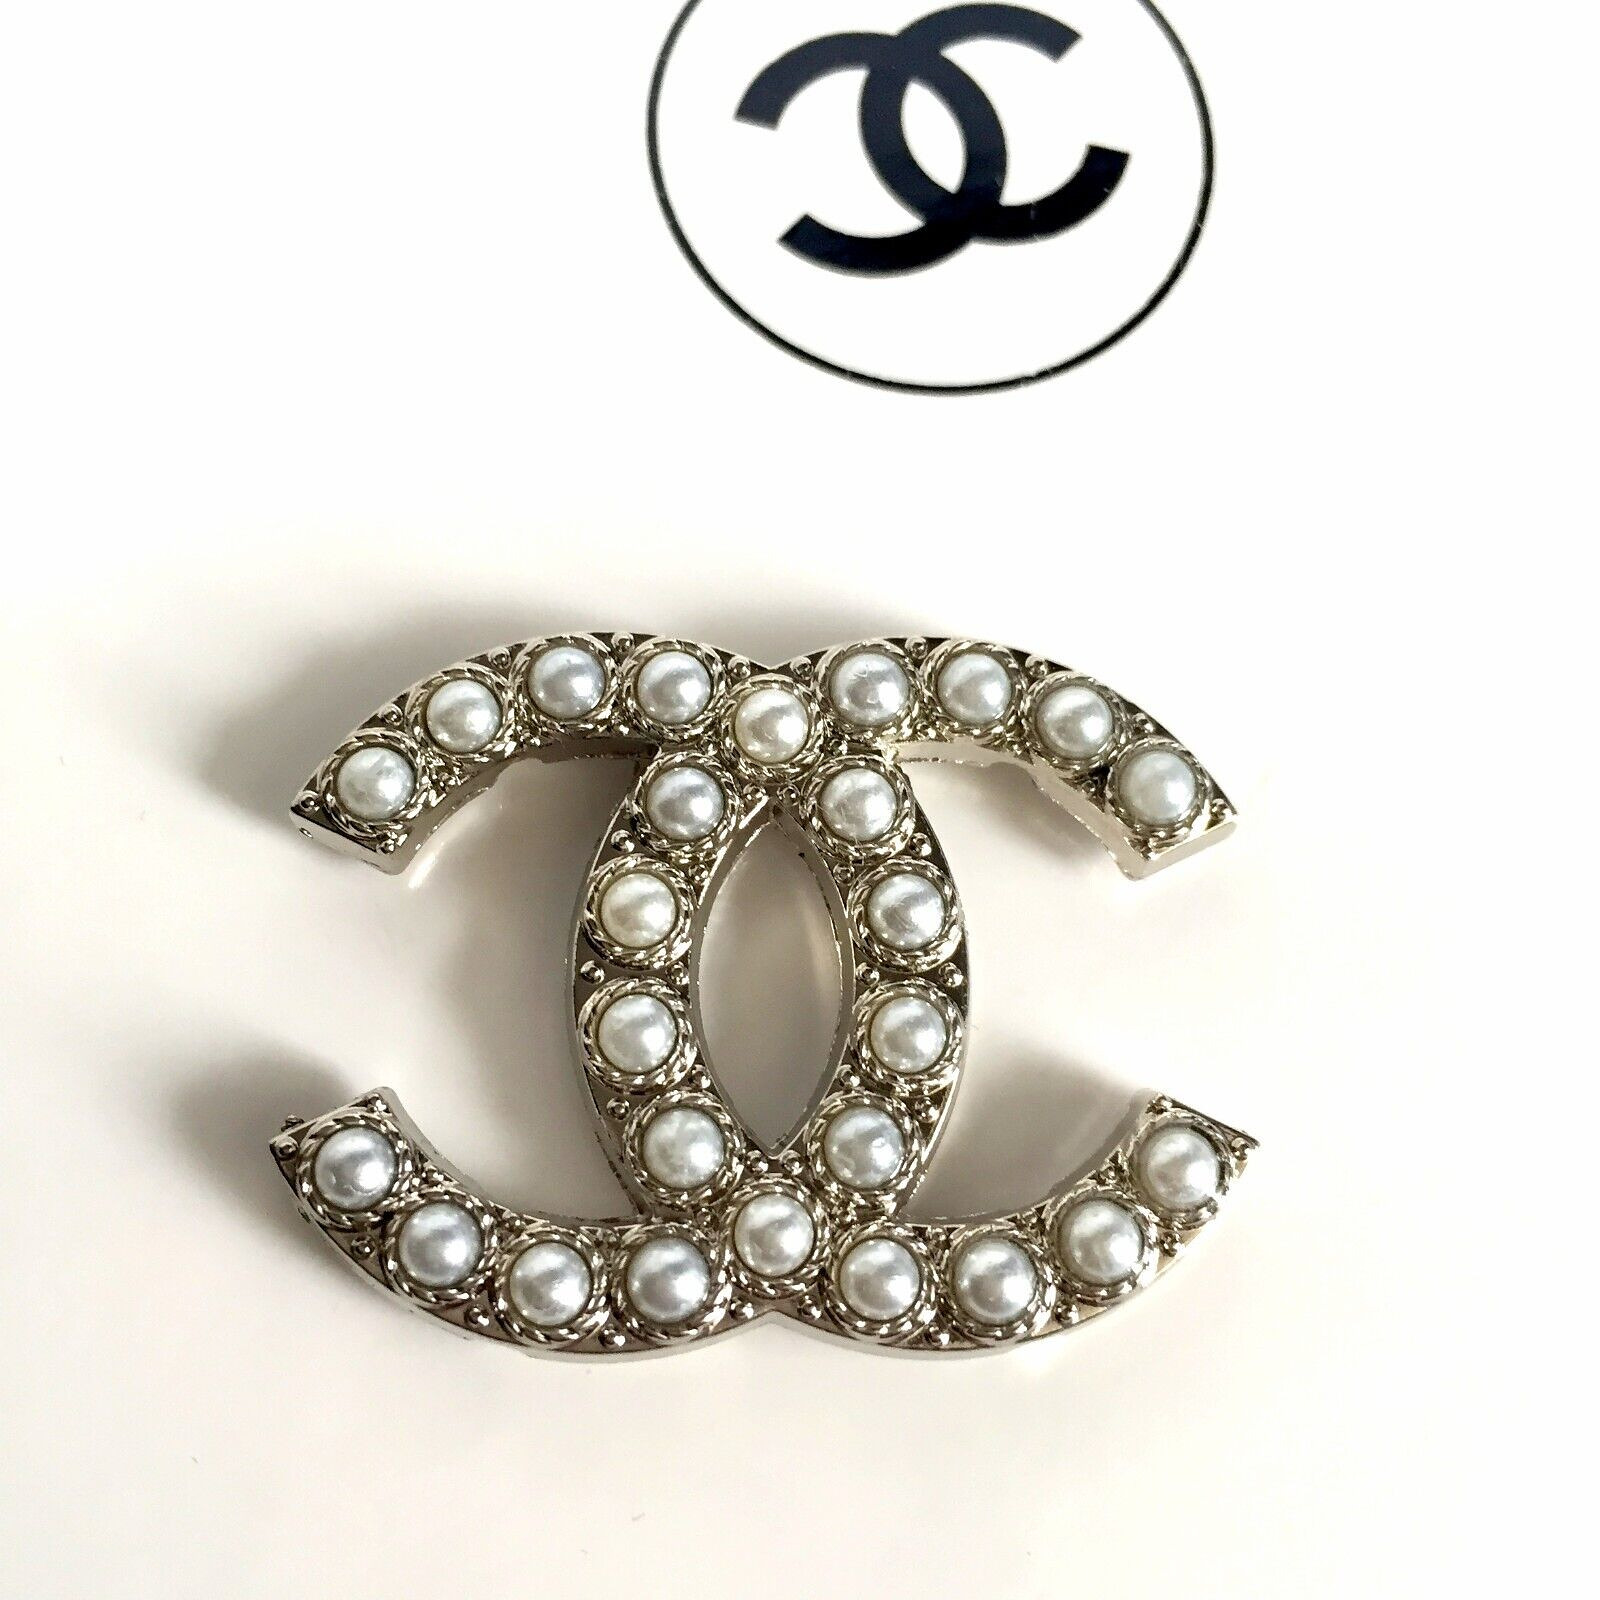 1 Vintage original large 38 mm x 29 mm Chanel CC Logo gold tone button 4 holes